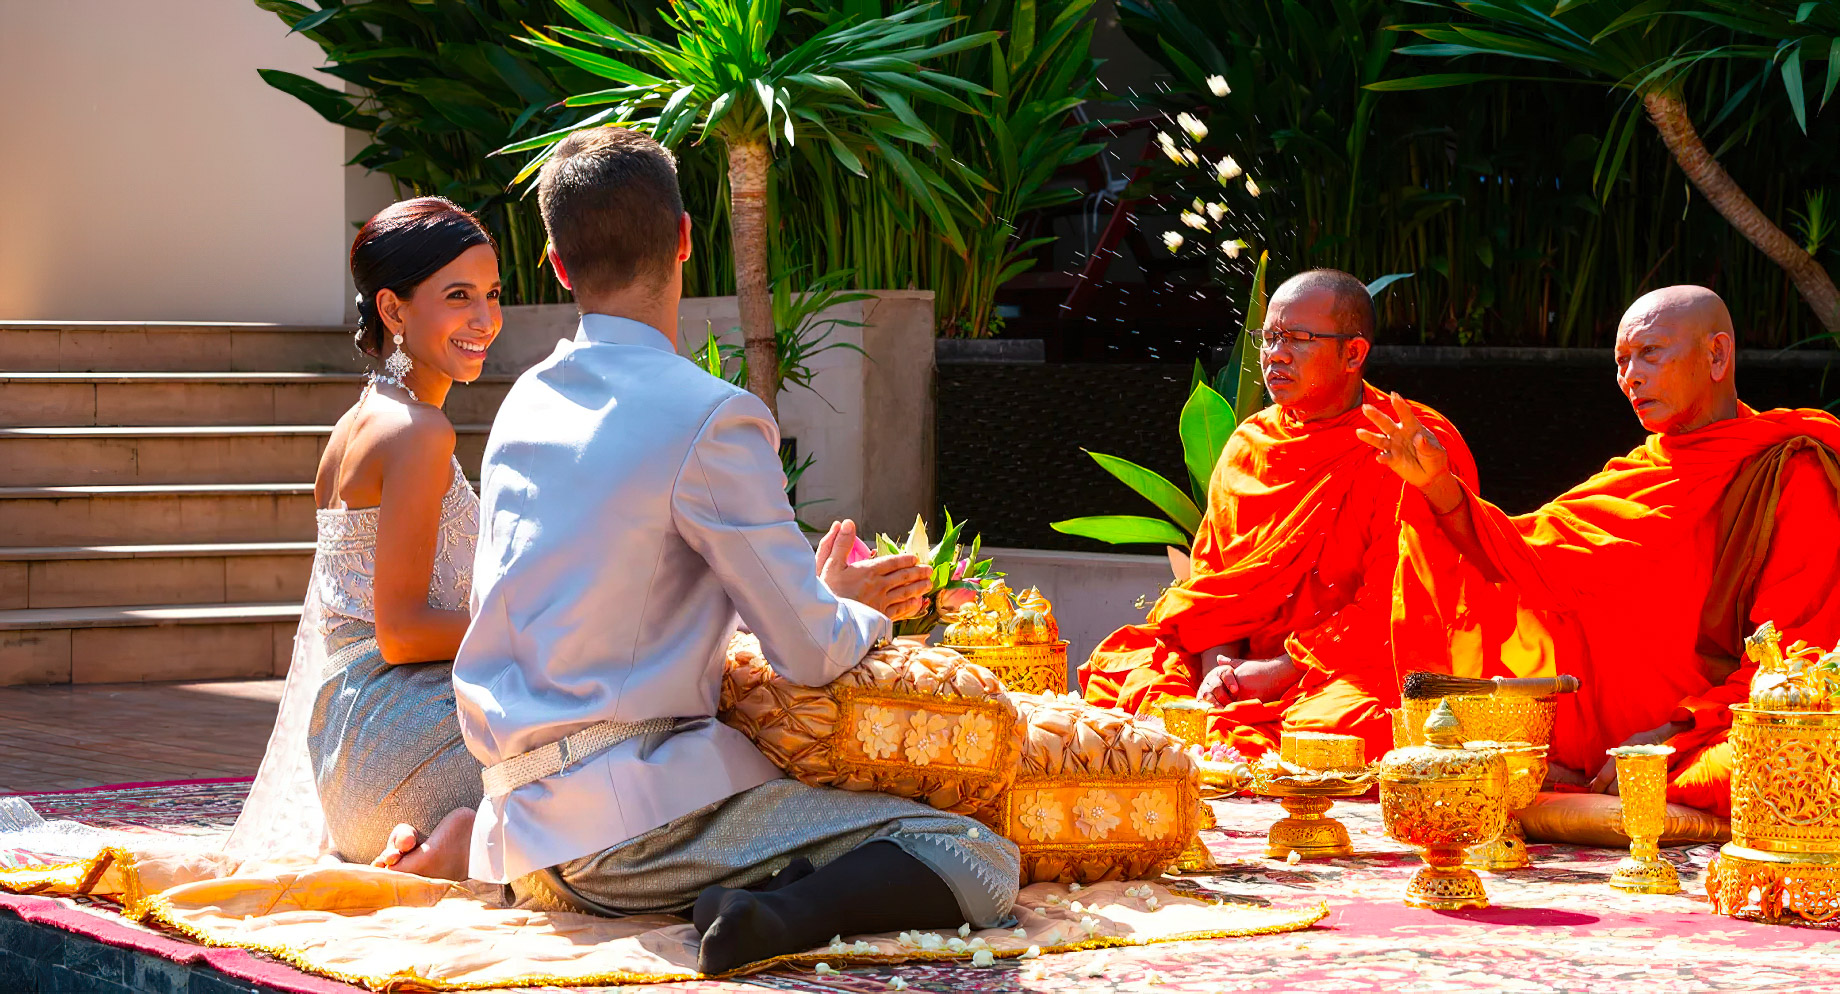 Anantara Angkor Resort - Siem Reap, Cambodia - Courtyard Wedding